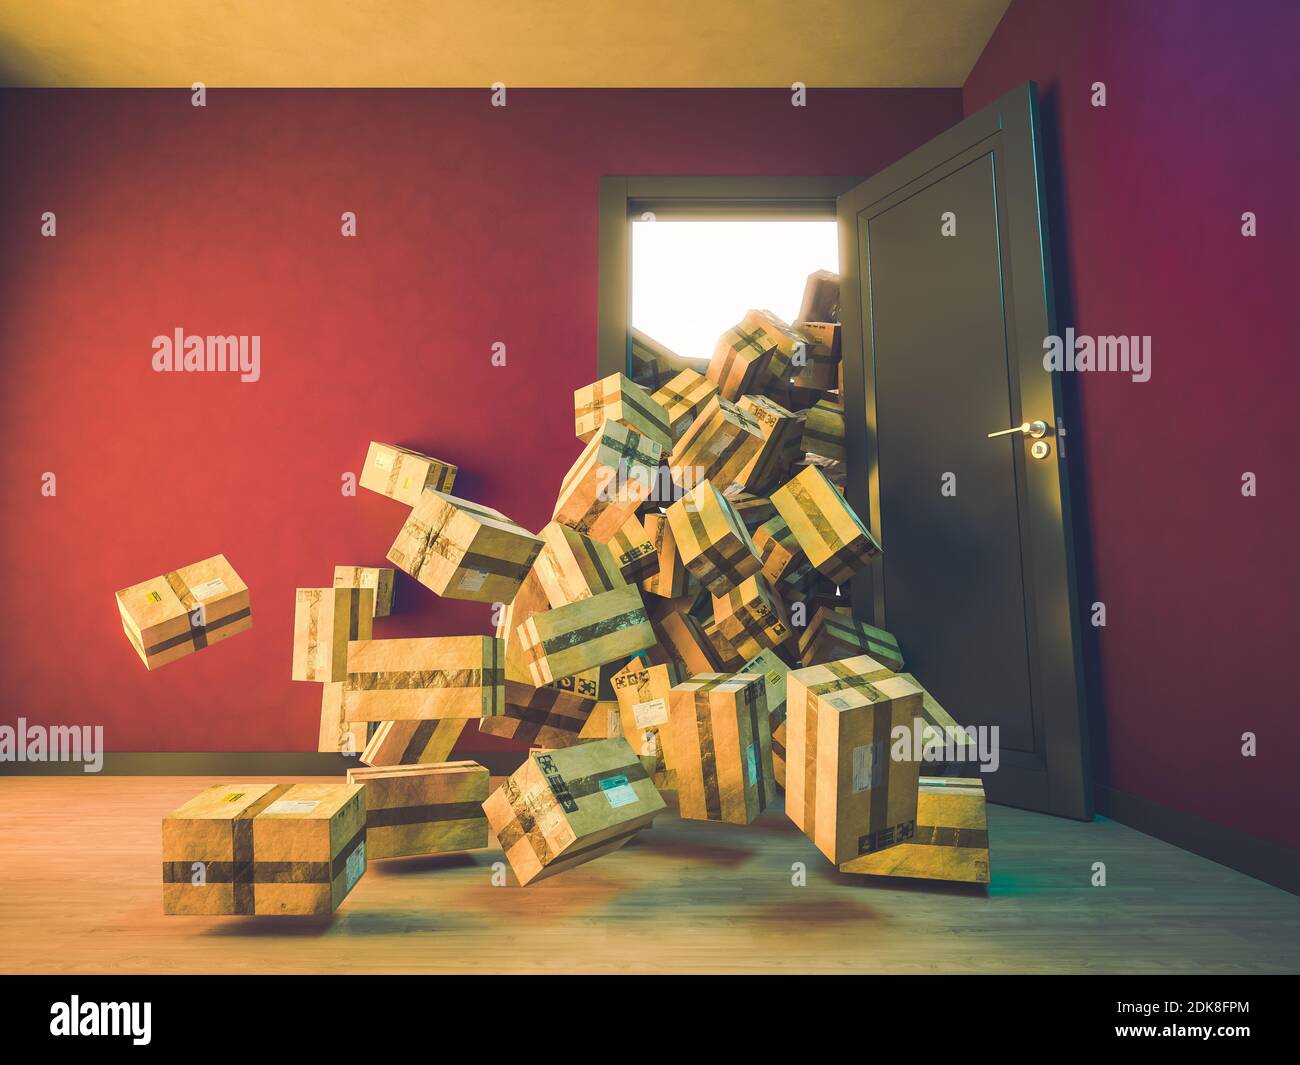 montagna di pacchetti che cadono all'interno di una casa. concetto di shopping online. rendering 3d Foto Stock